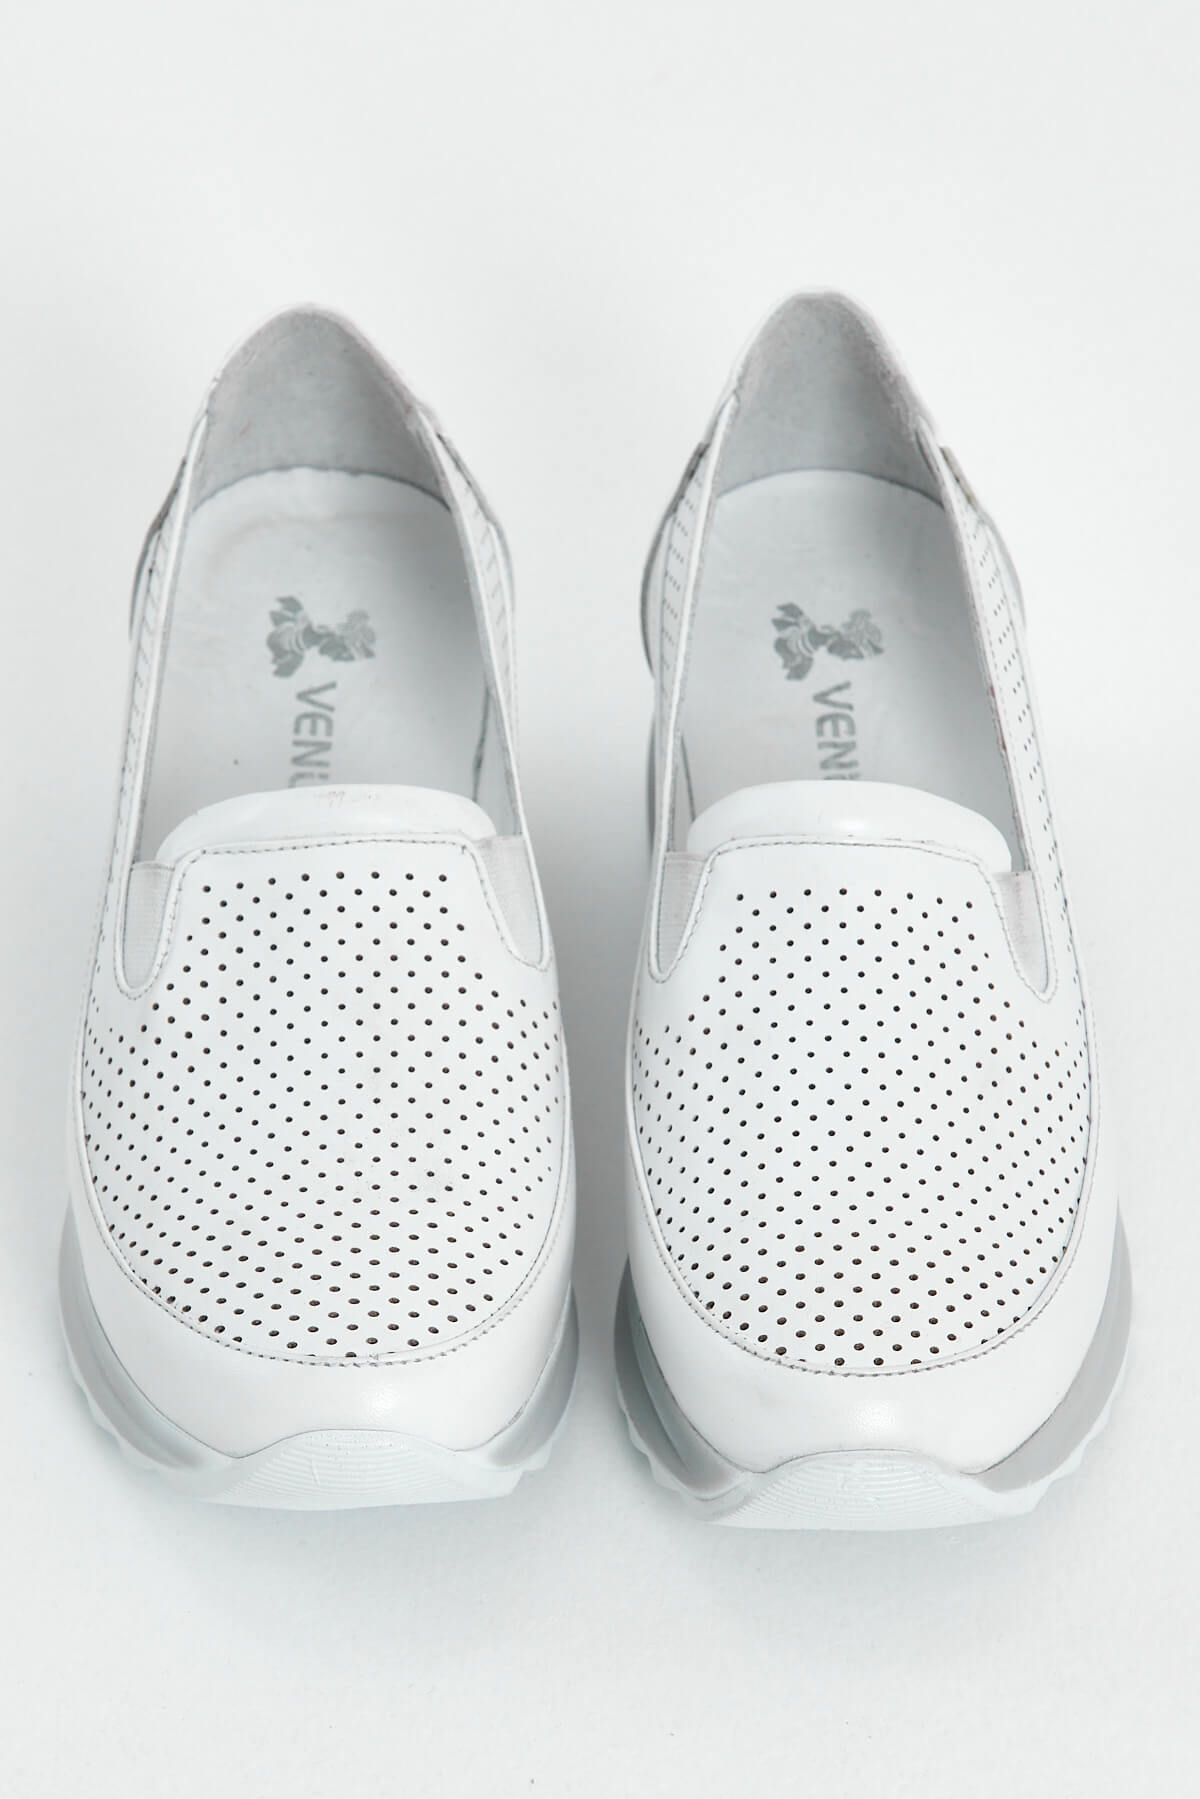 Kadın Dolgu Topuk Deri Sneakers Beyaz 2310302Y